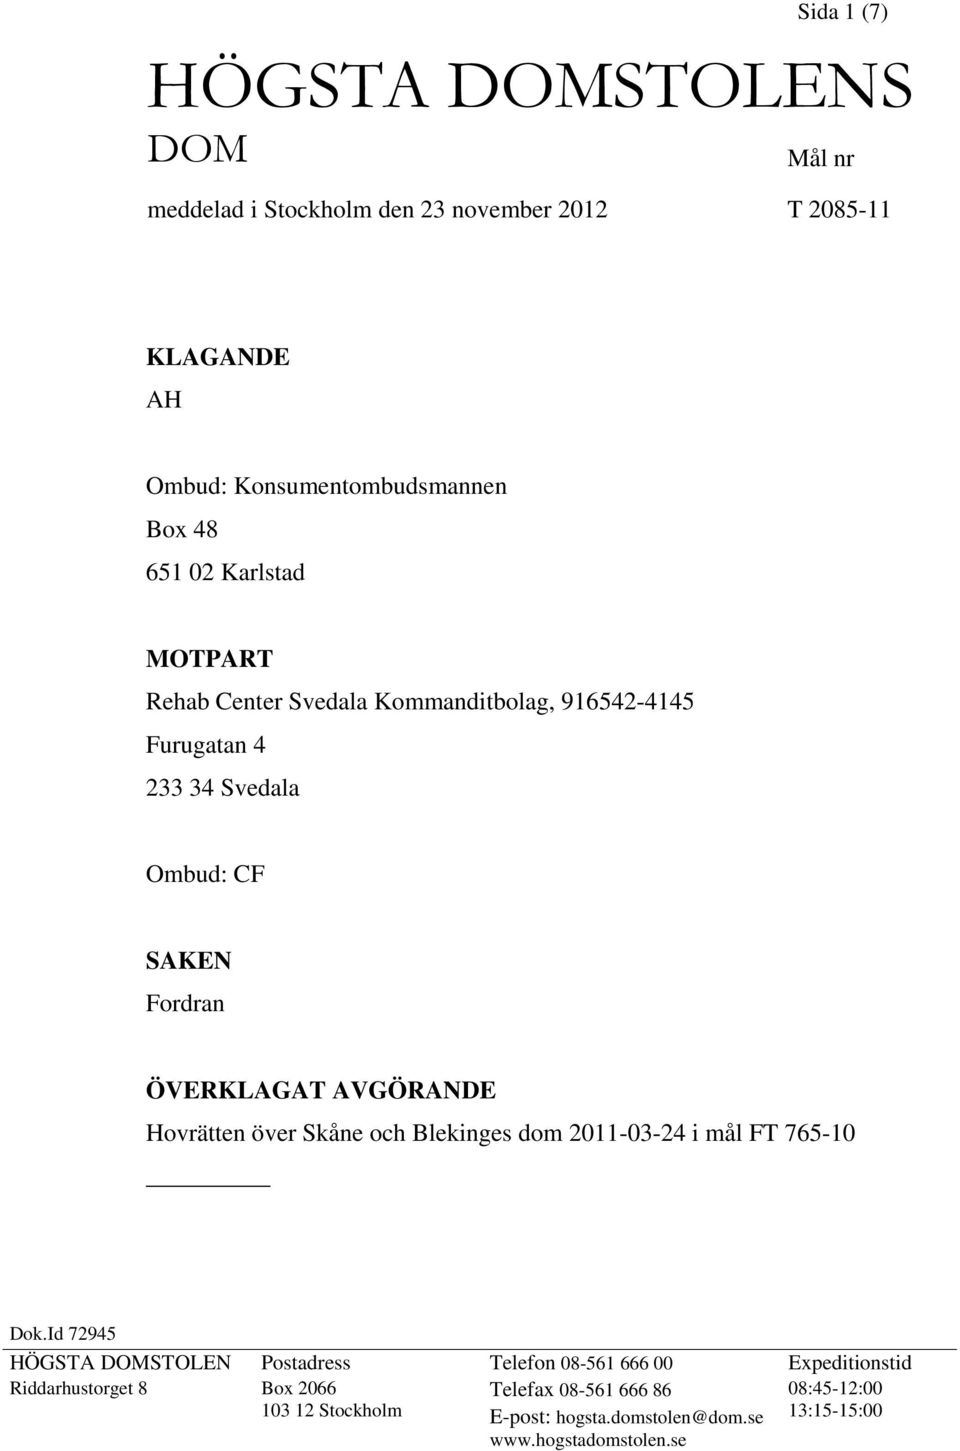 Hovrätten över Skåne och Blekinges dom 2011-03-24 i mål FT 765-10 Dok.